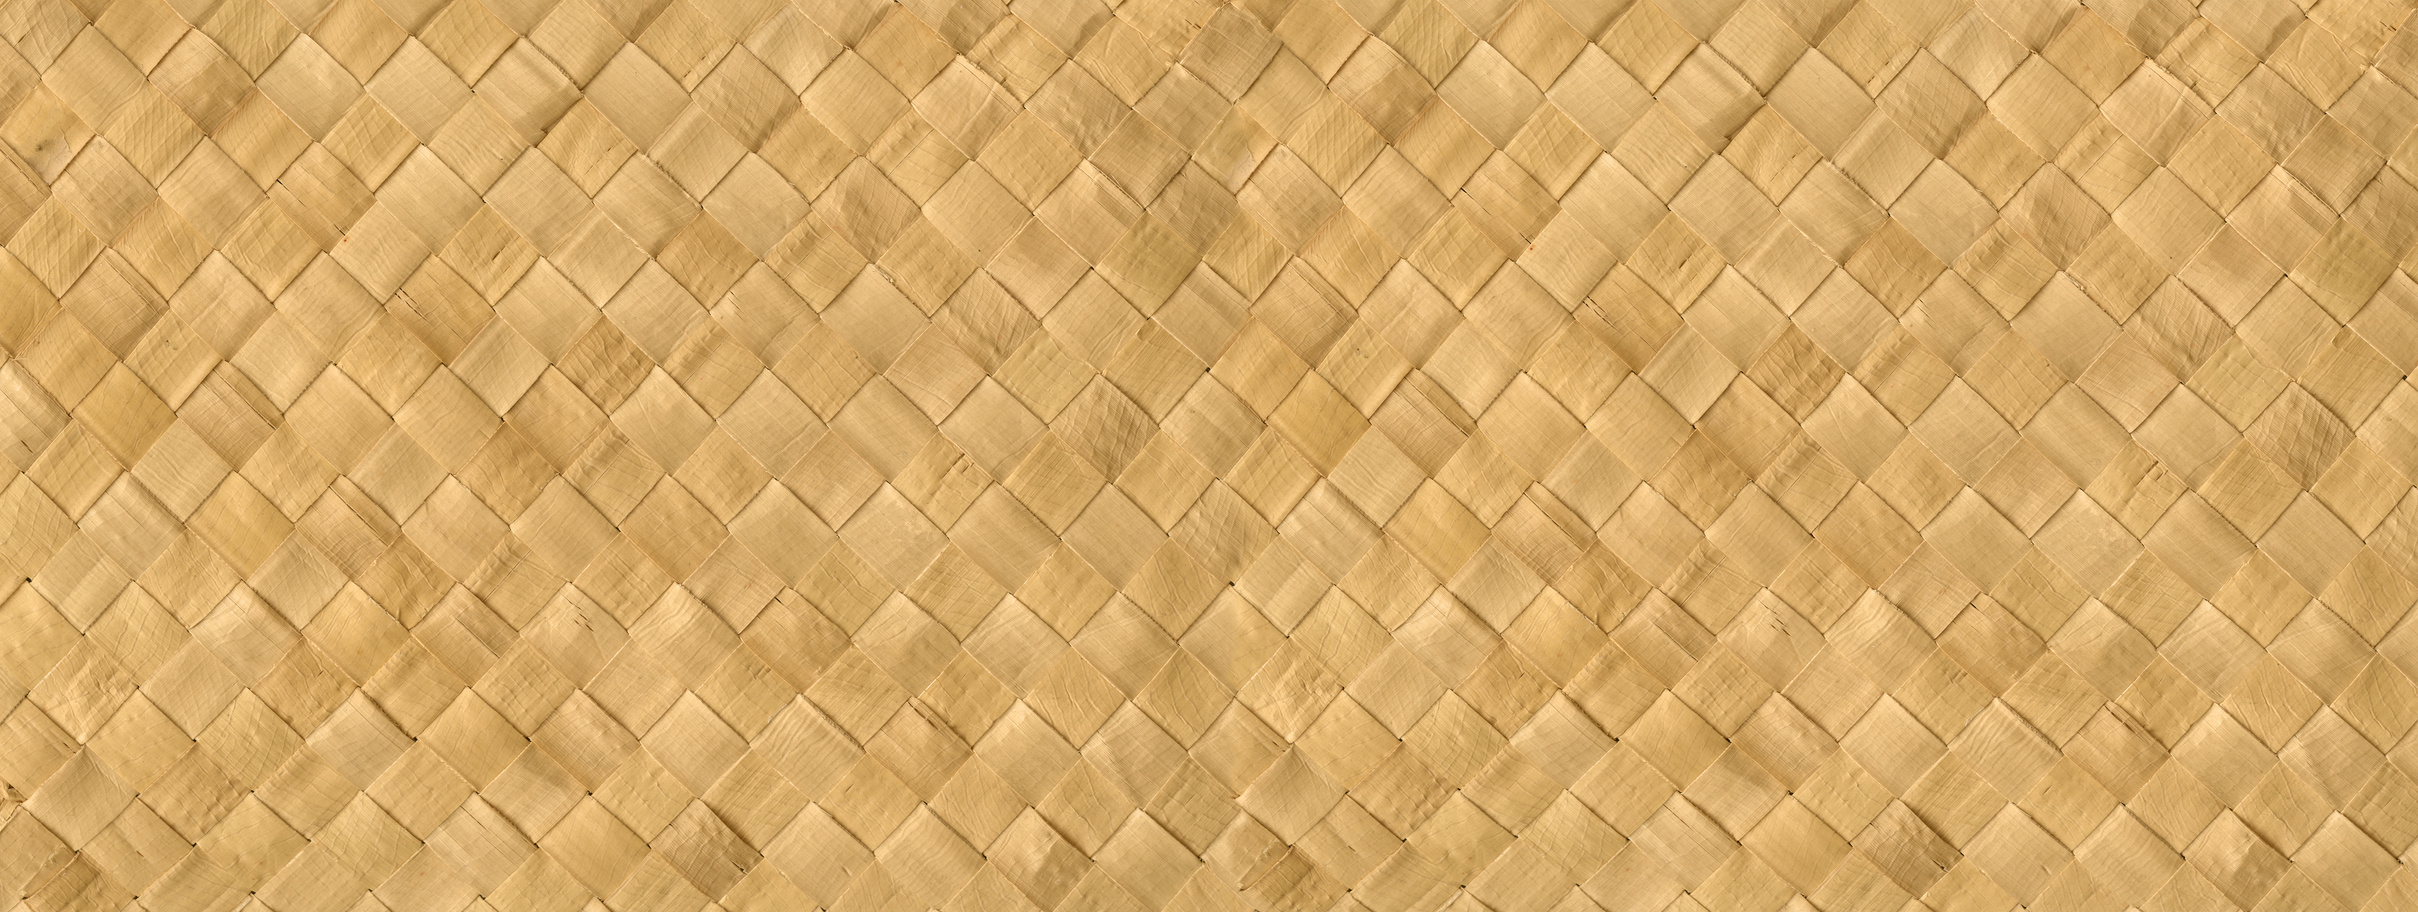 Woven Bamboo Mat